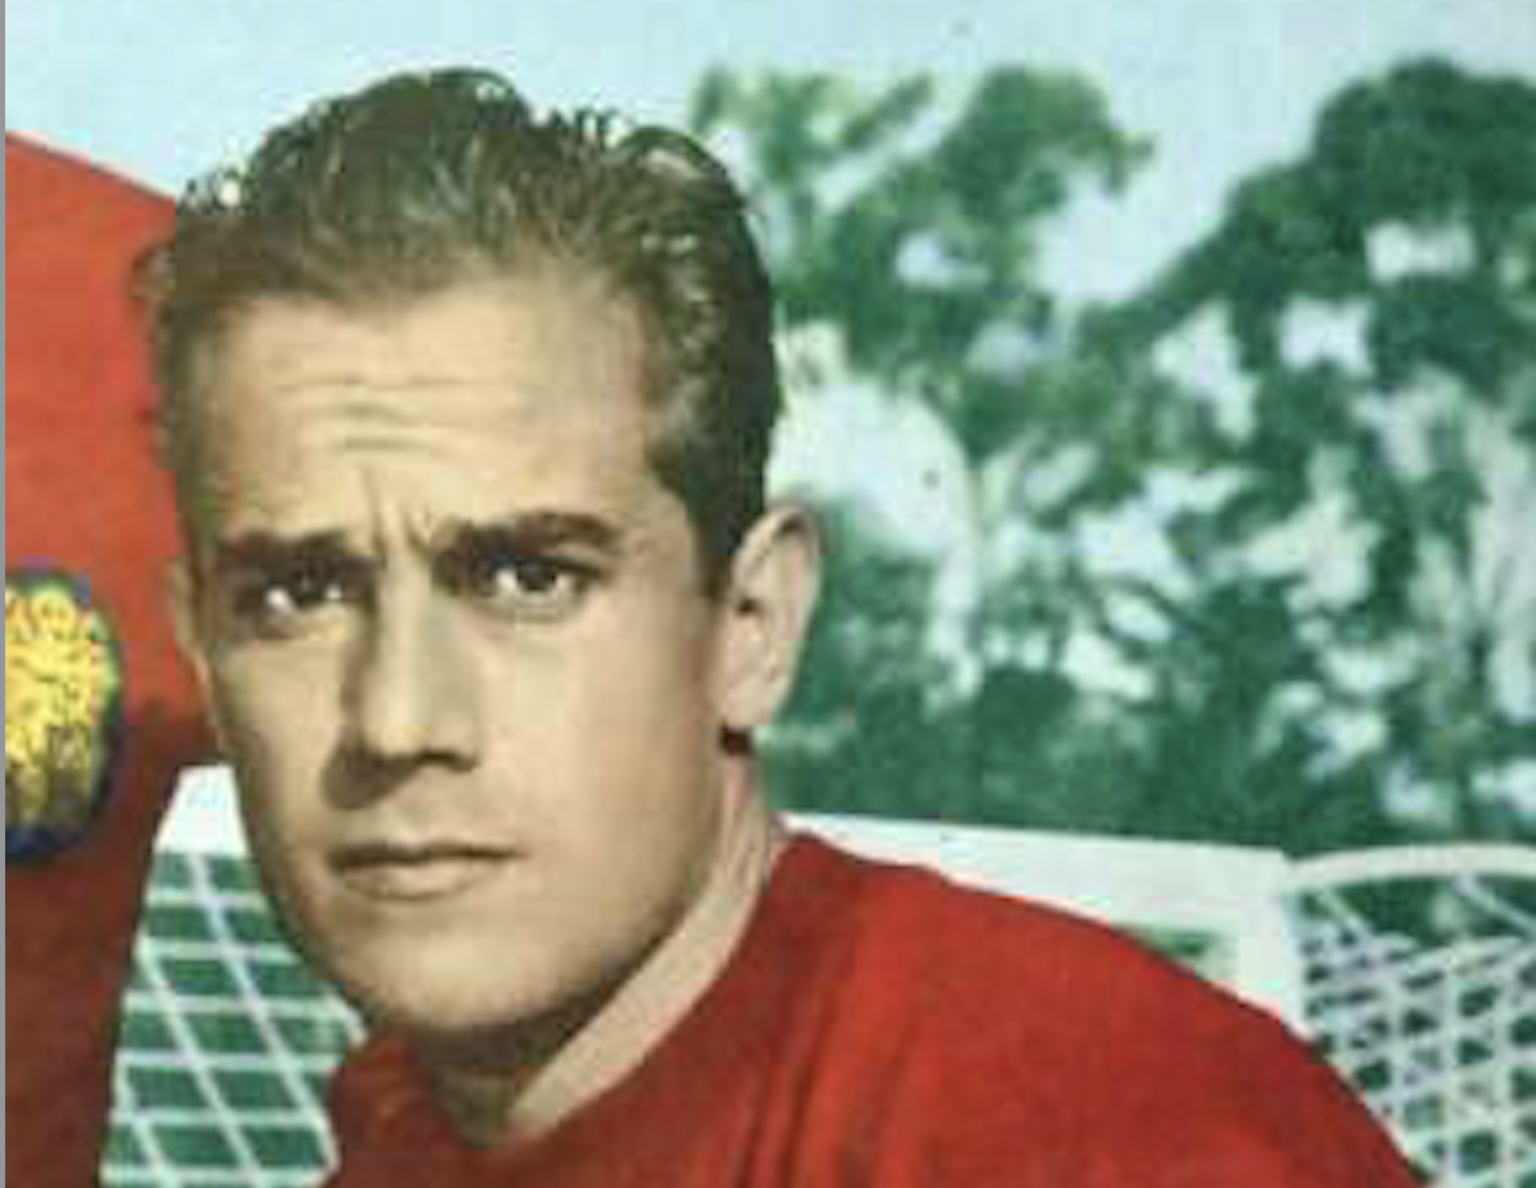 Meghalt Luis Suarez, de nem a mostani sztár, hanem a Puskással rivalizáló régi spanyol focilegenda